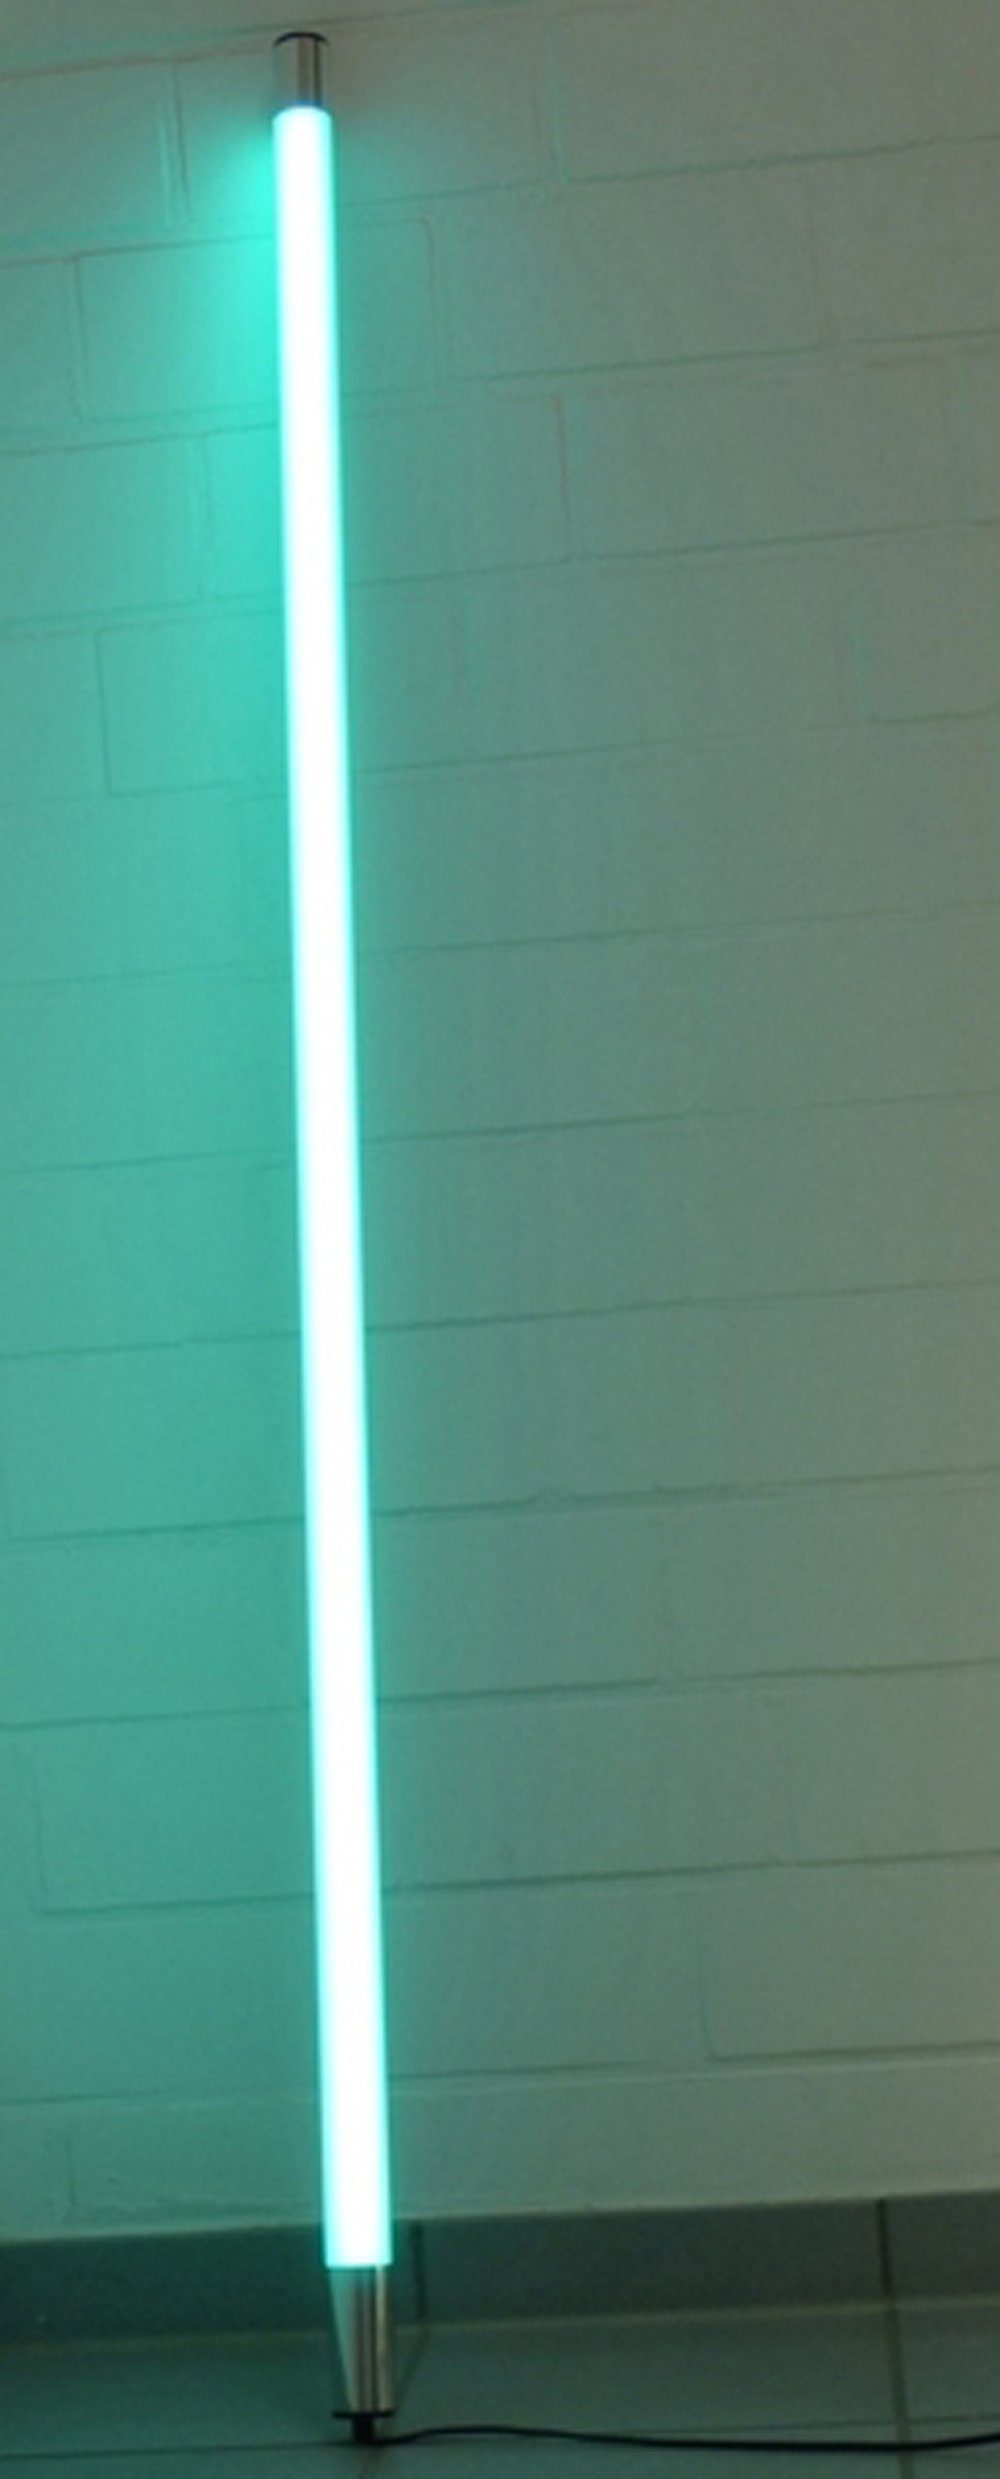 XENON LED Wandleuchte Xenon Röhre 0,63m Türkis, Innen LED T8, Satiniert LED IP20 6861 Länge Leuchtstab 950 Lumen